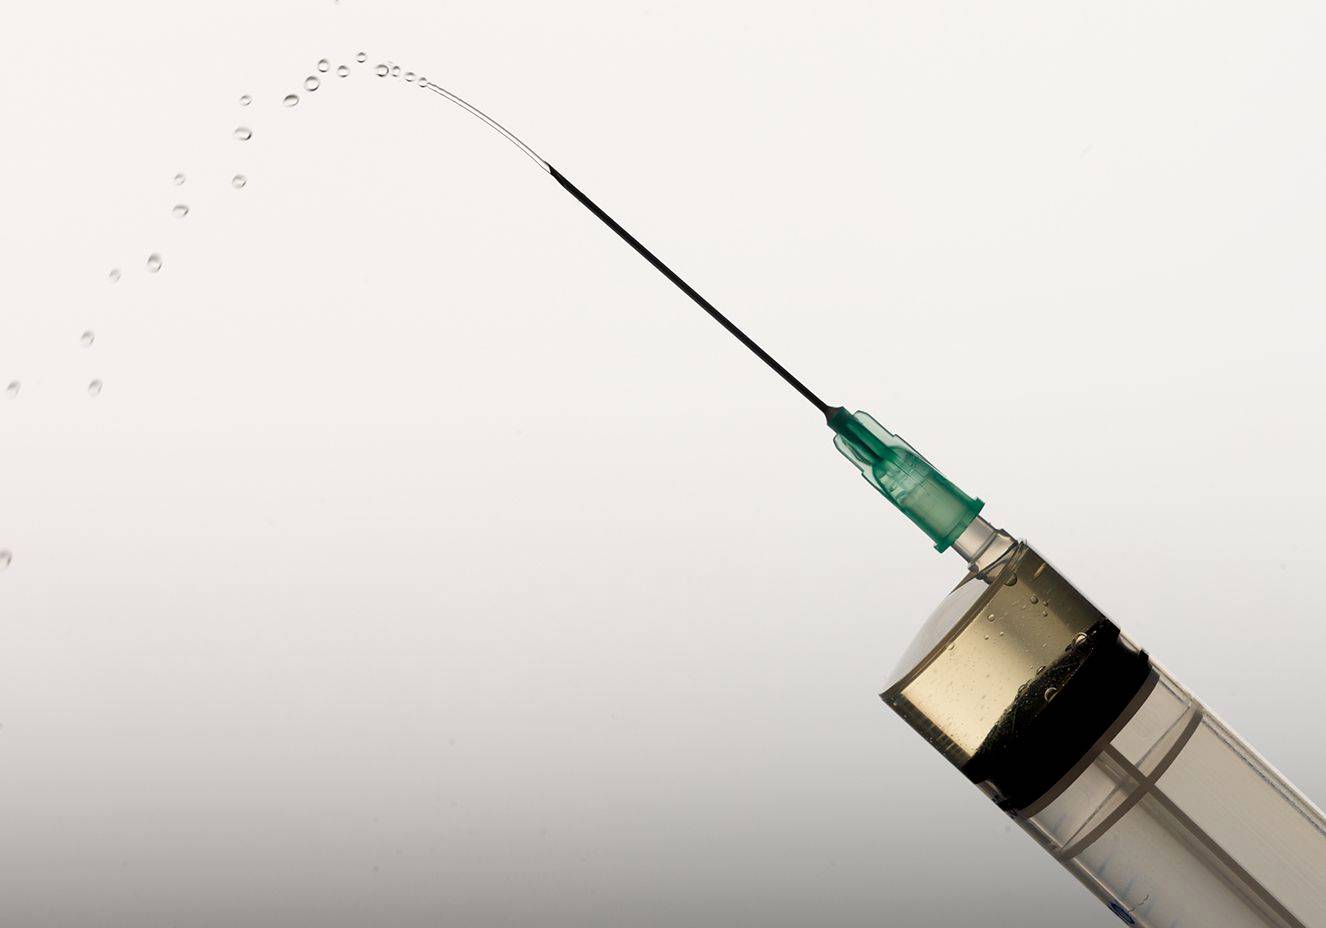 Covid-19: vacina russa é segura e eficaz, diz estudo inicial